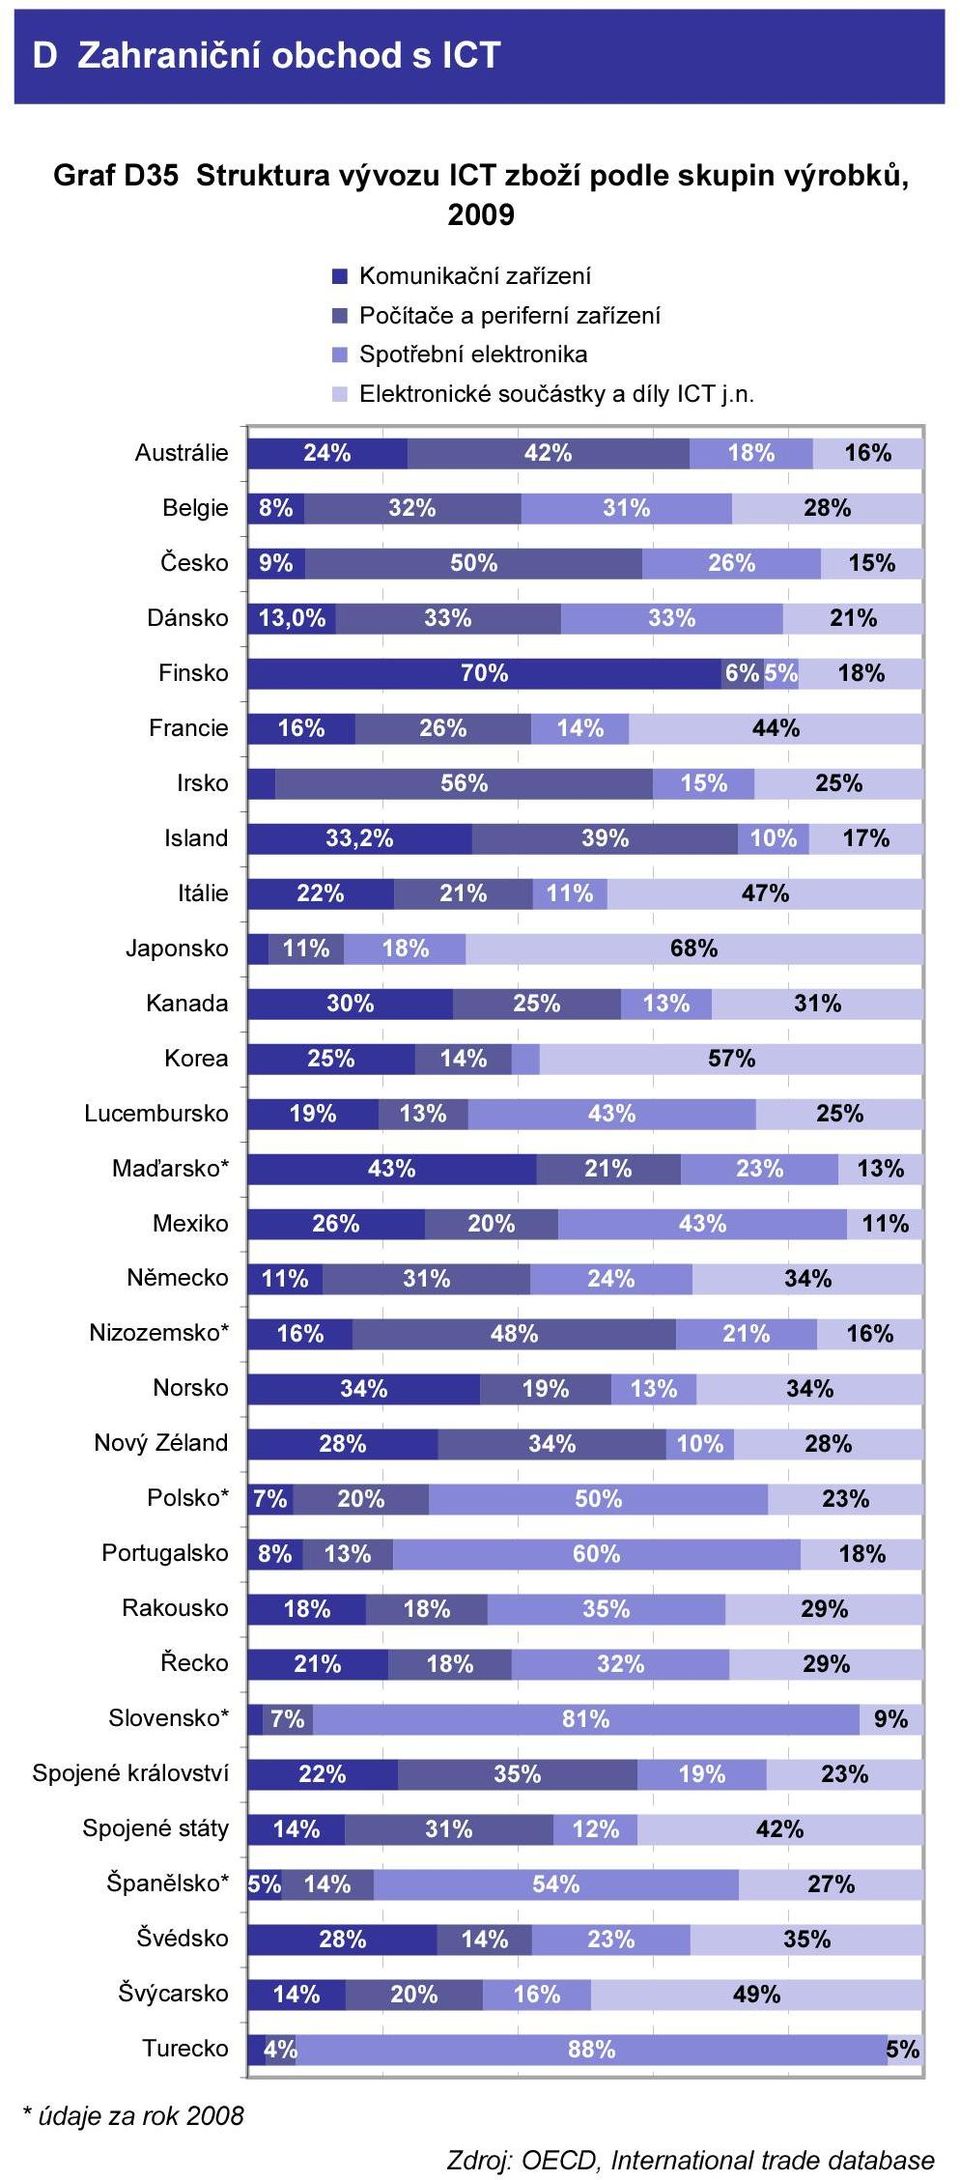 kační zařízení Počítače a periferní zařízení Spotřební elektronika Elektronické součástky a díly ICT j.n. Austrálie 24% 42% 16% Belgie 8% 32% 31% 28% Česko 50% 15% Dánsko